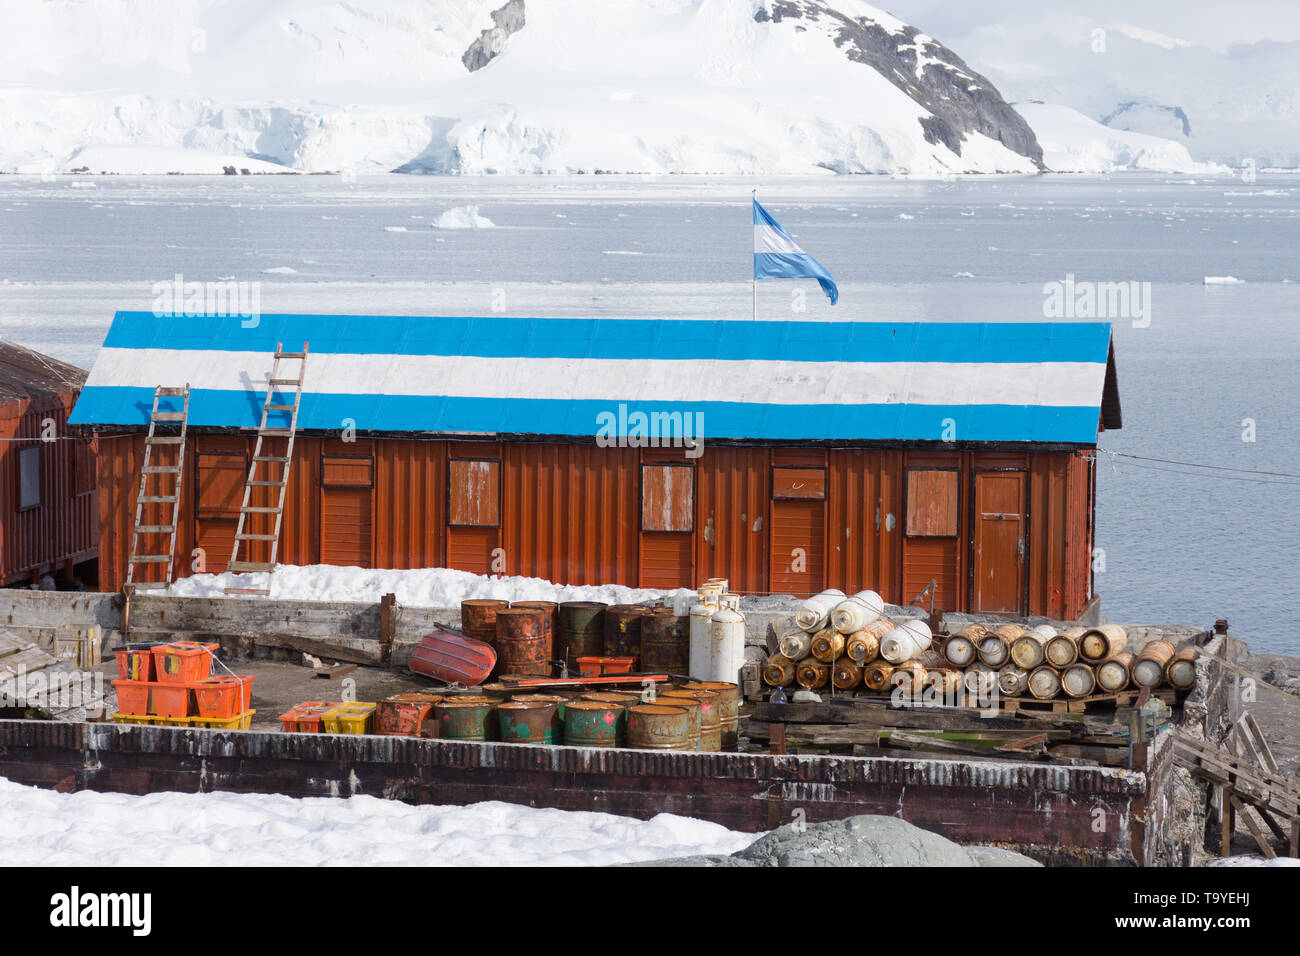 Gros plan d'une construction en métal couleur rouille au Camp Brown dans l'Antarctique. La station de recherche a un drapeau argentin peint sur le toit. Banque D'Images